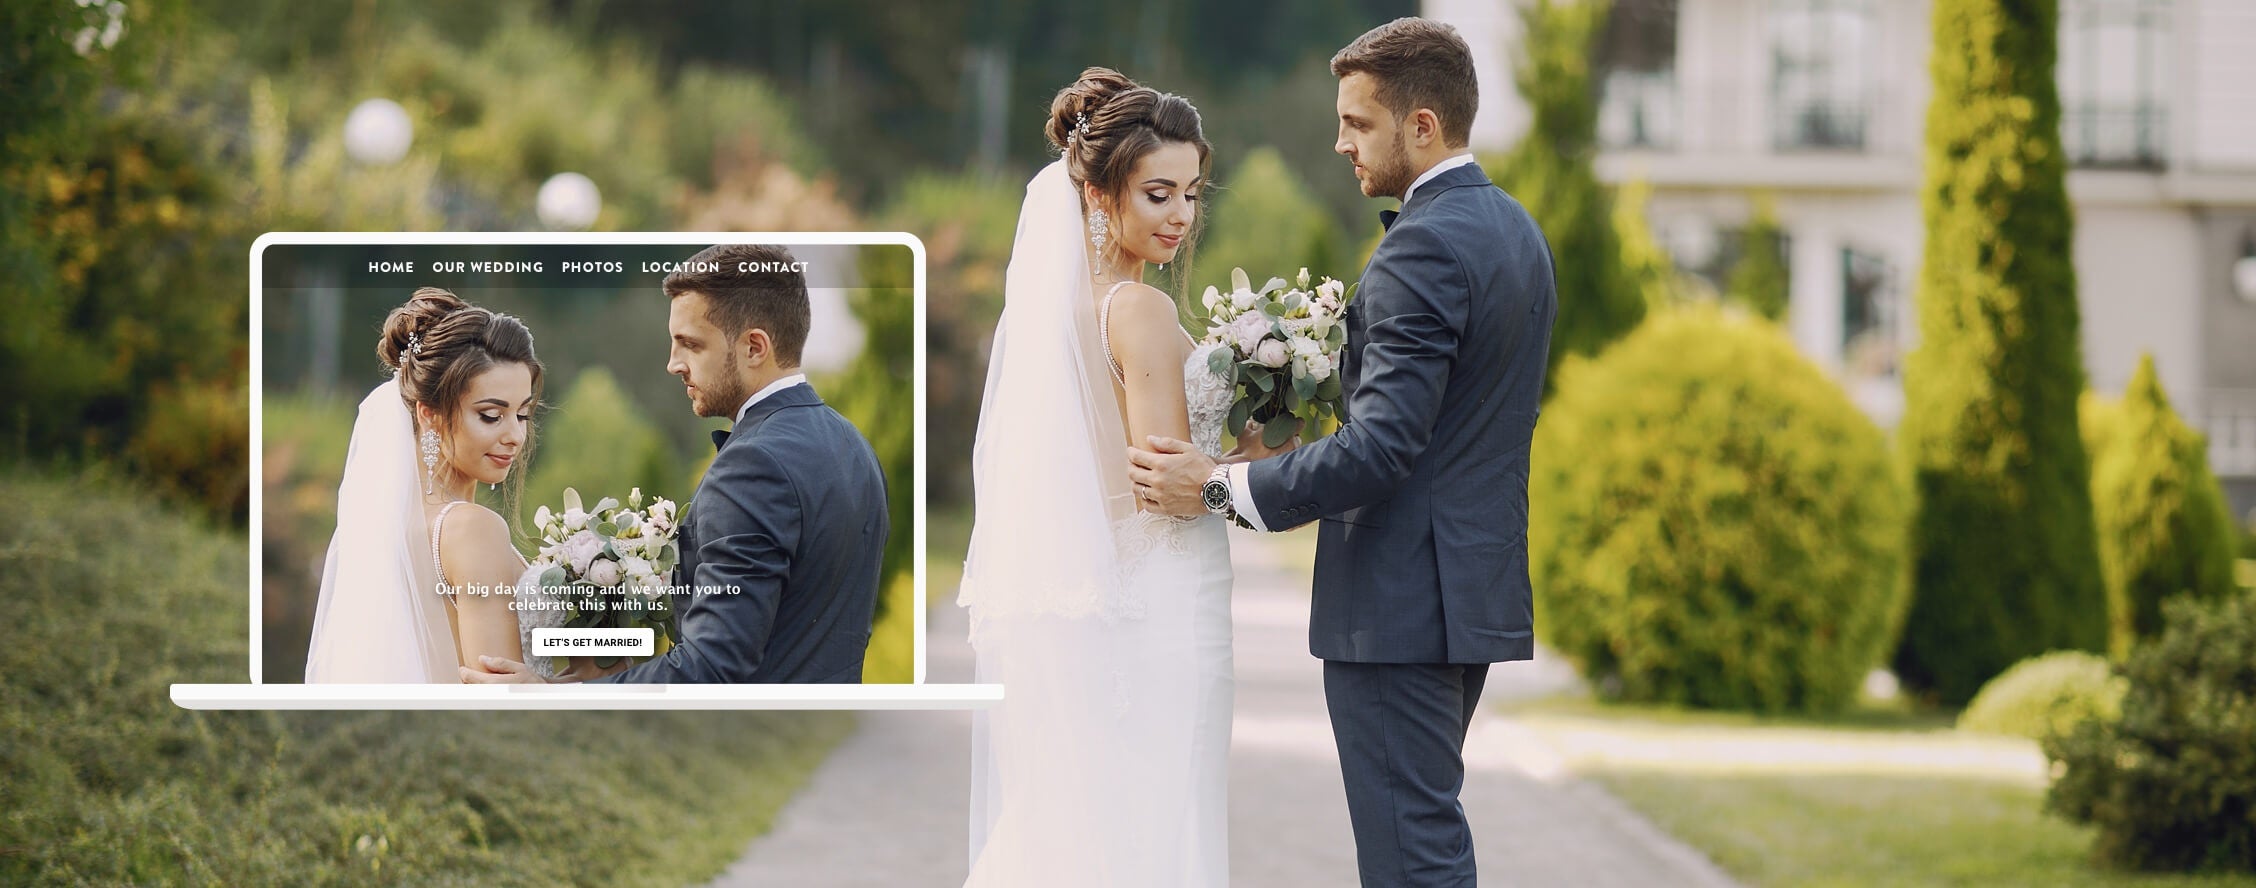 Una pareja posa con sus respectivos trajes en el día de su boda. Al lado izquierdo de esta imagen, una captura de la página web de su boda.